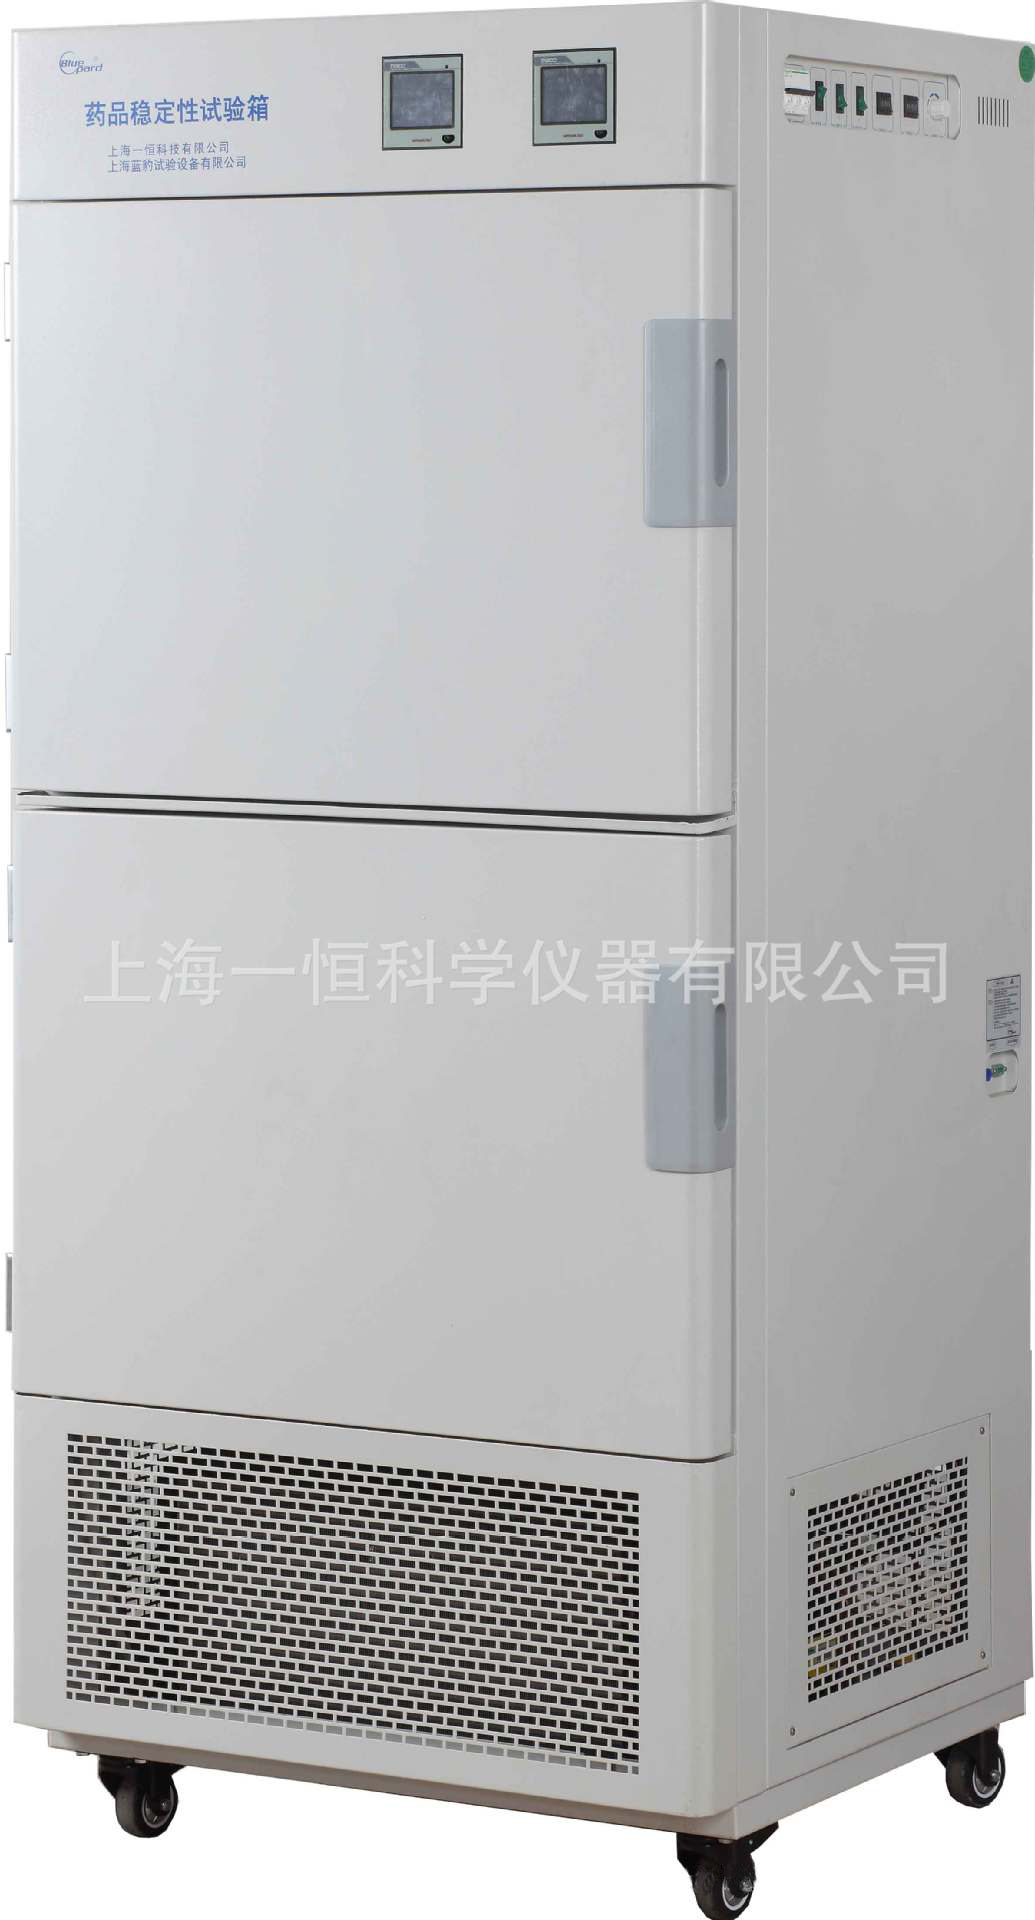 上海一恒 LHH-SG-I 综合药品稳定性试验箱（二箱） 强光 触摸屏控制器